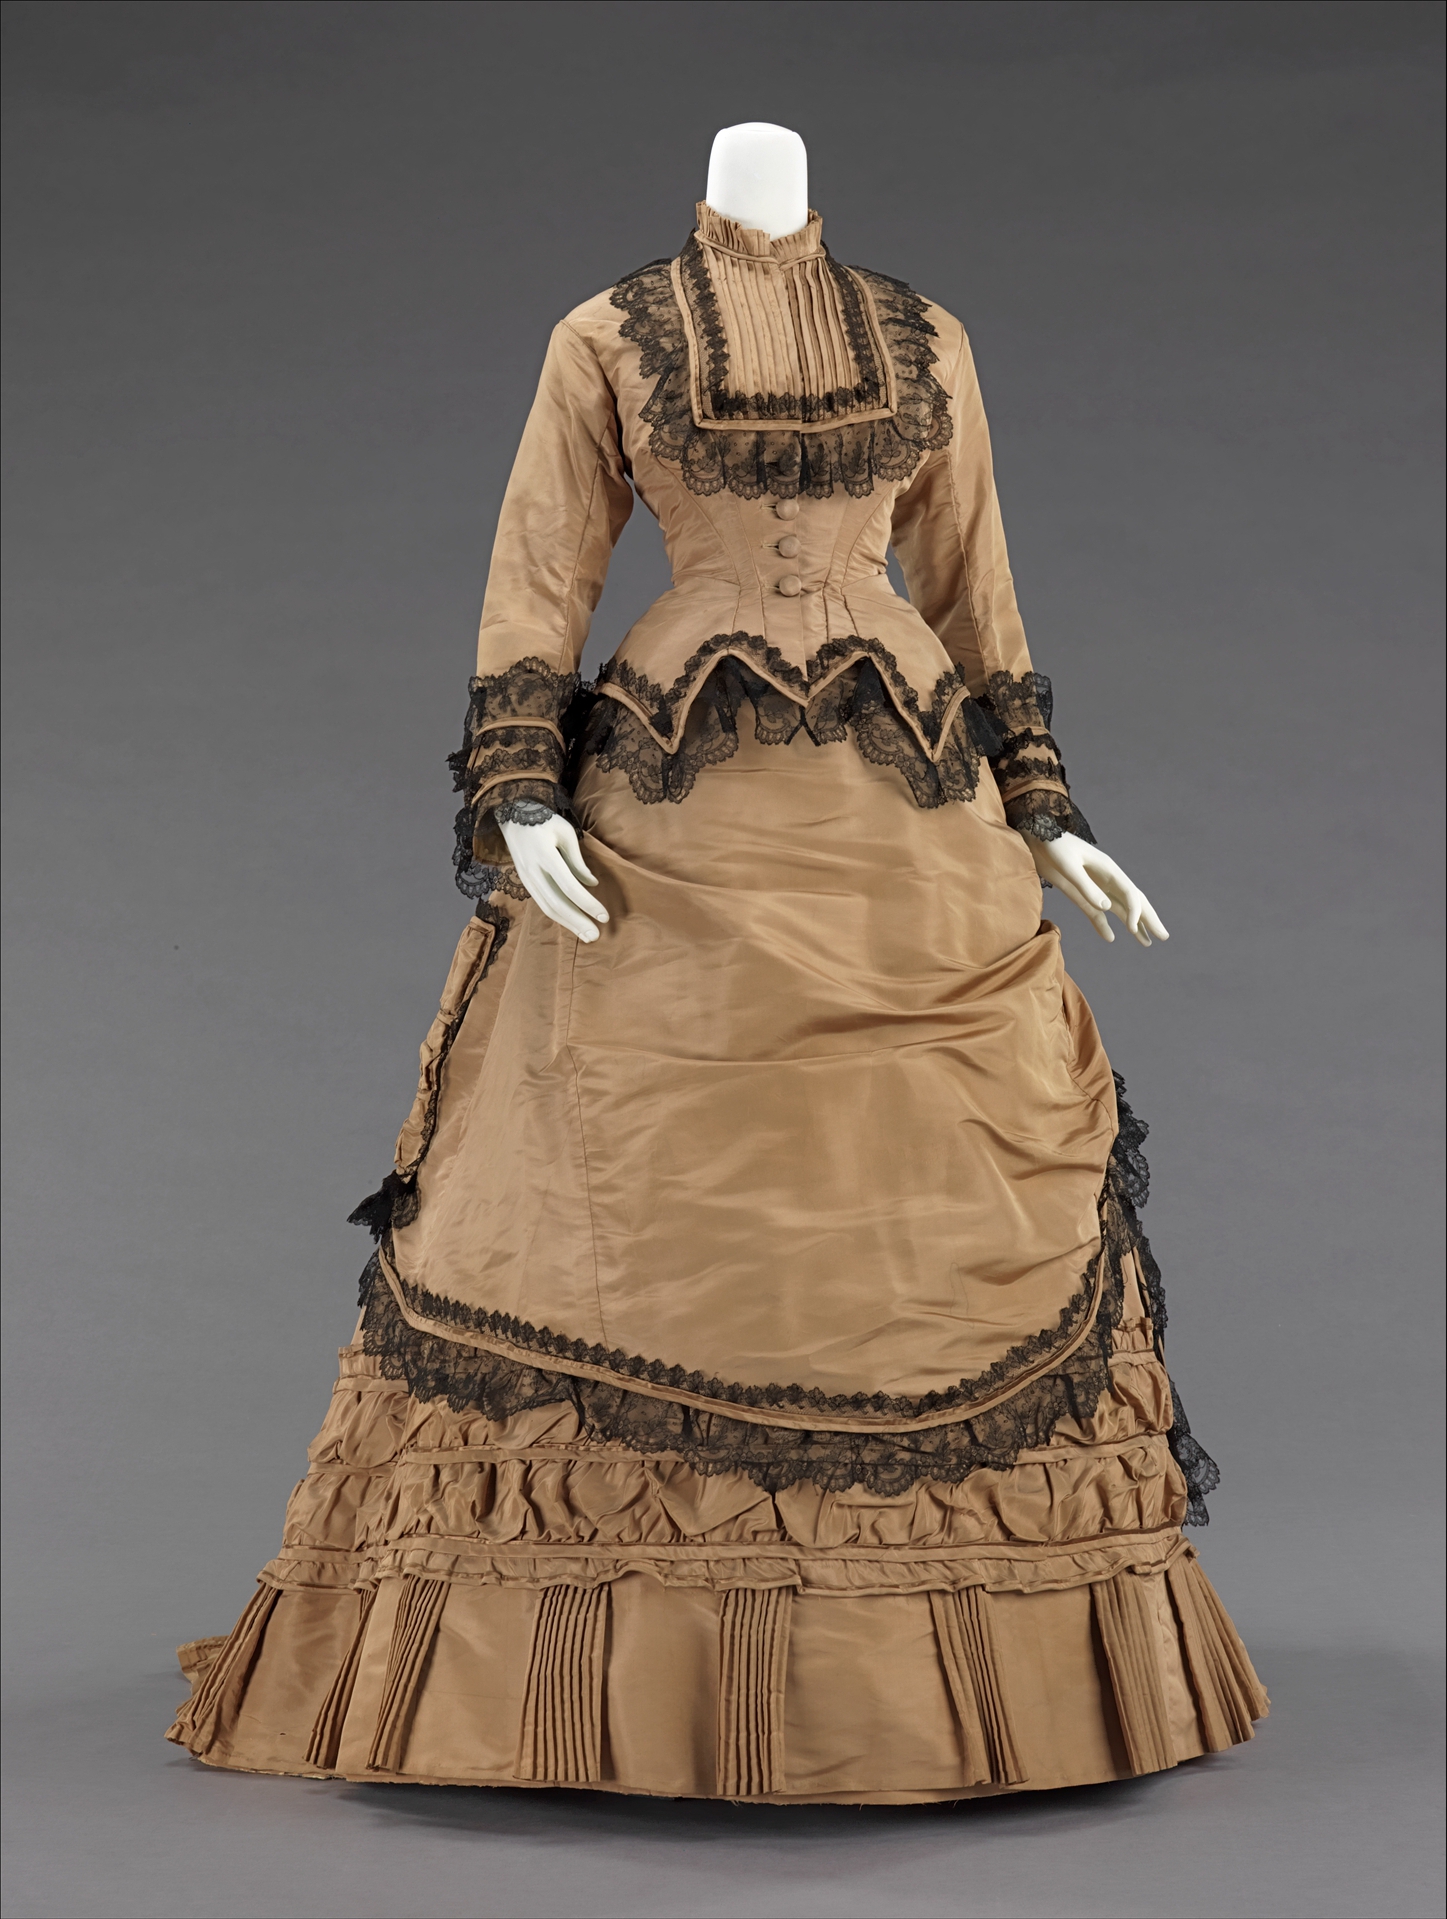 100 Dresses The Costume Institute The Metropolitan Museum of Art
Epub-Ebook